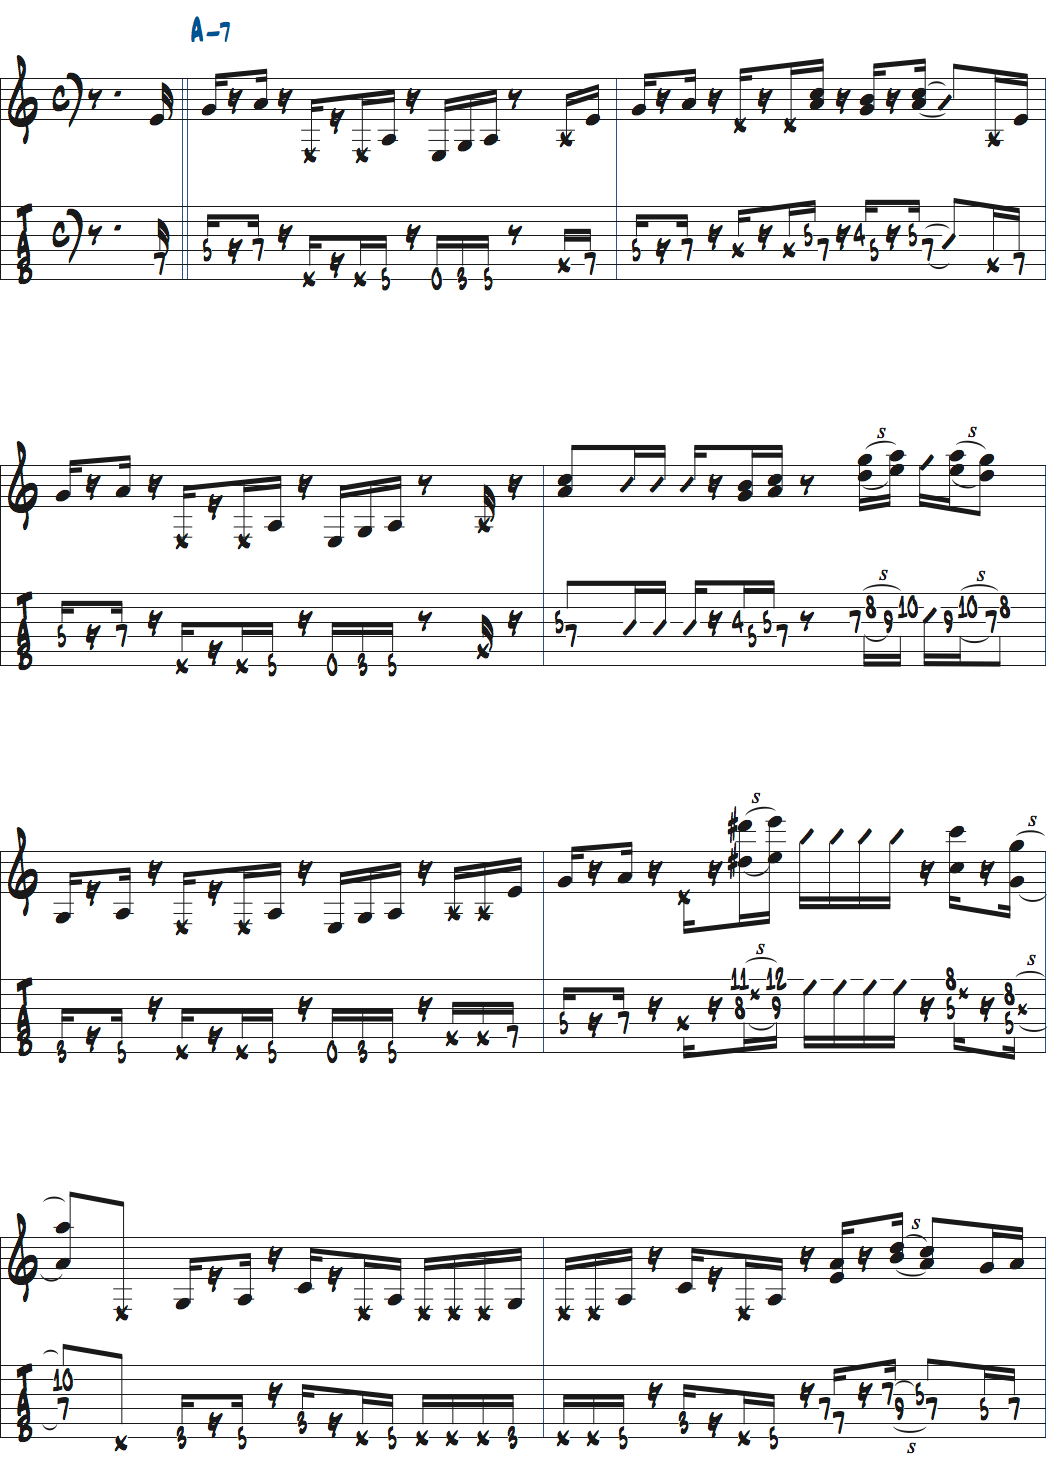 ポールジャクソンジュニアが弾くAm7で6度とオクターブを加えたバッキング例楽譜ページ1